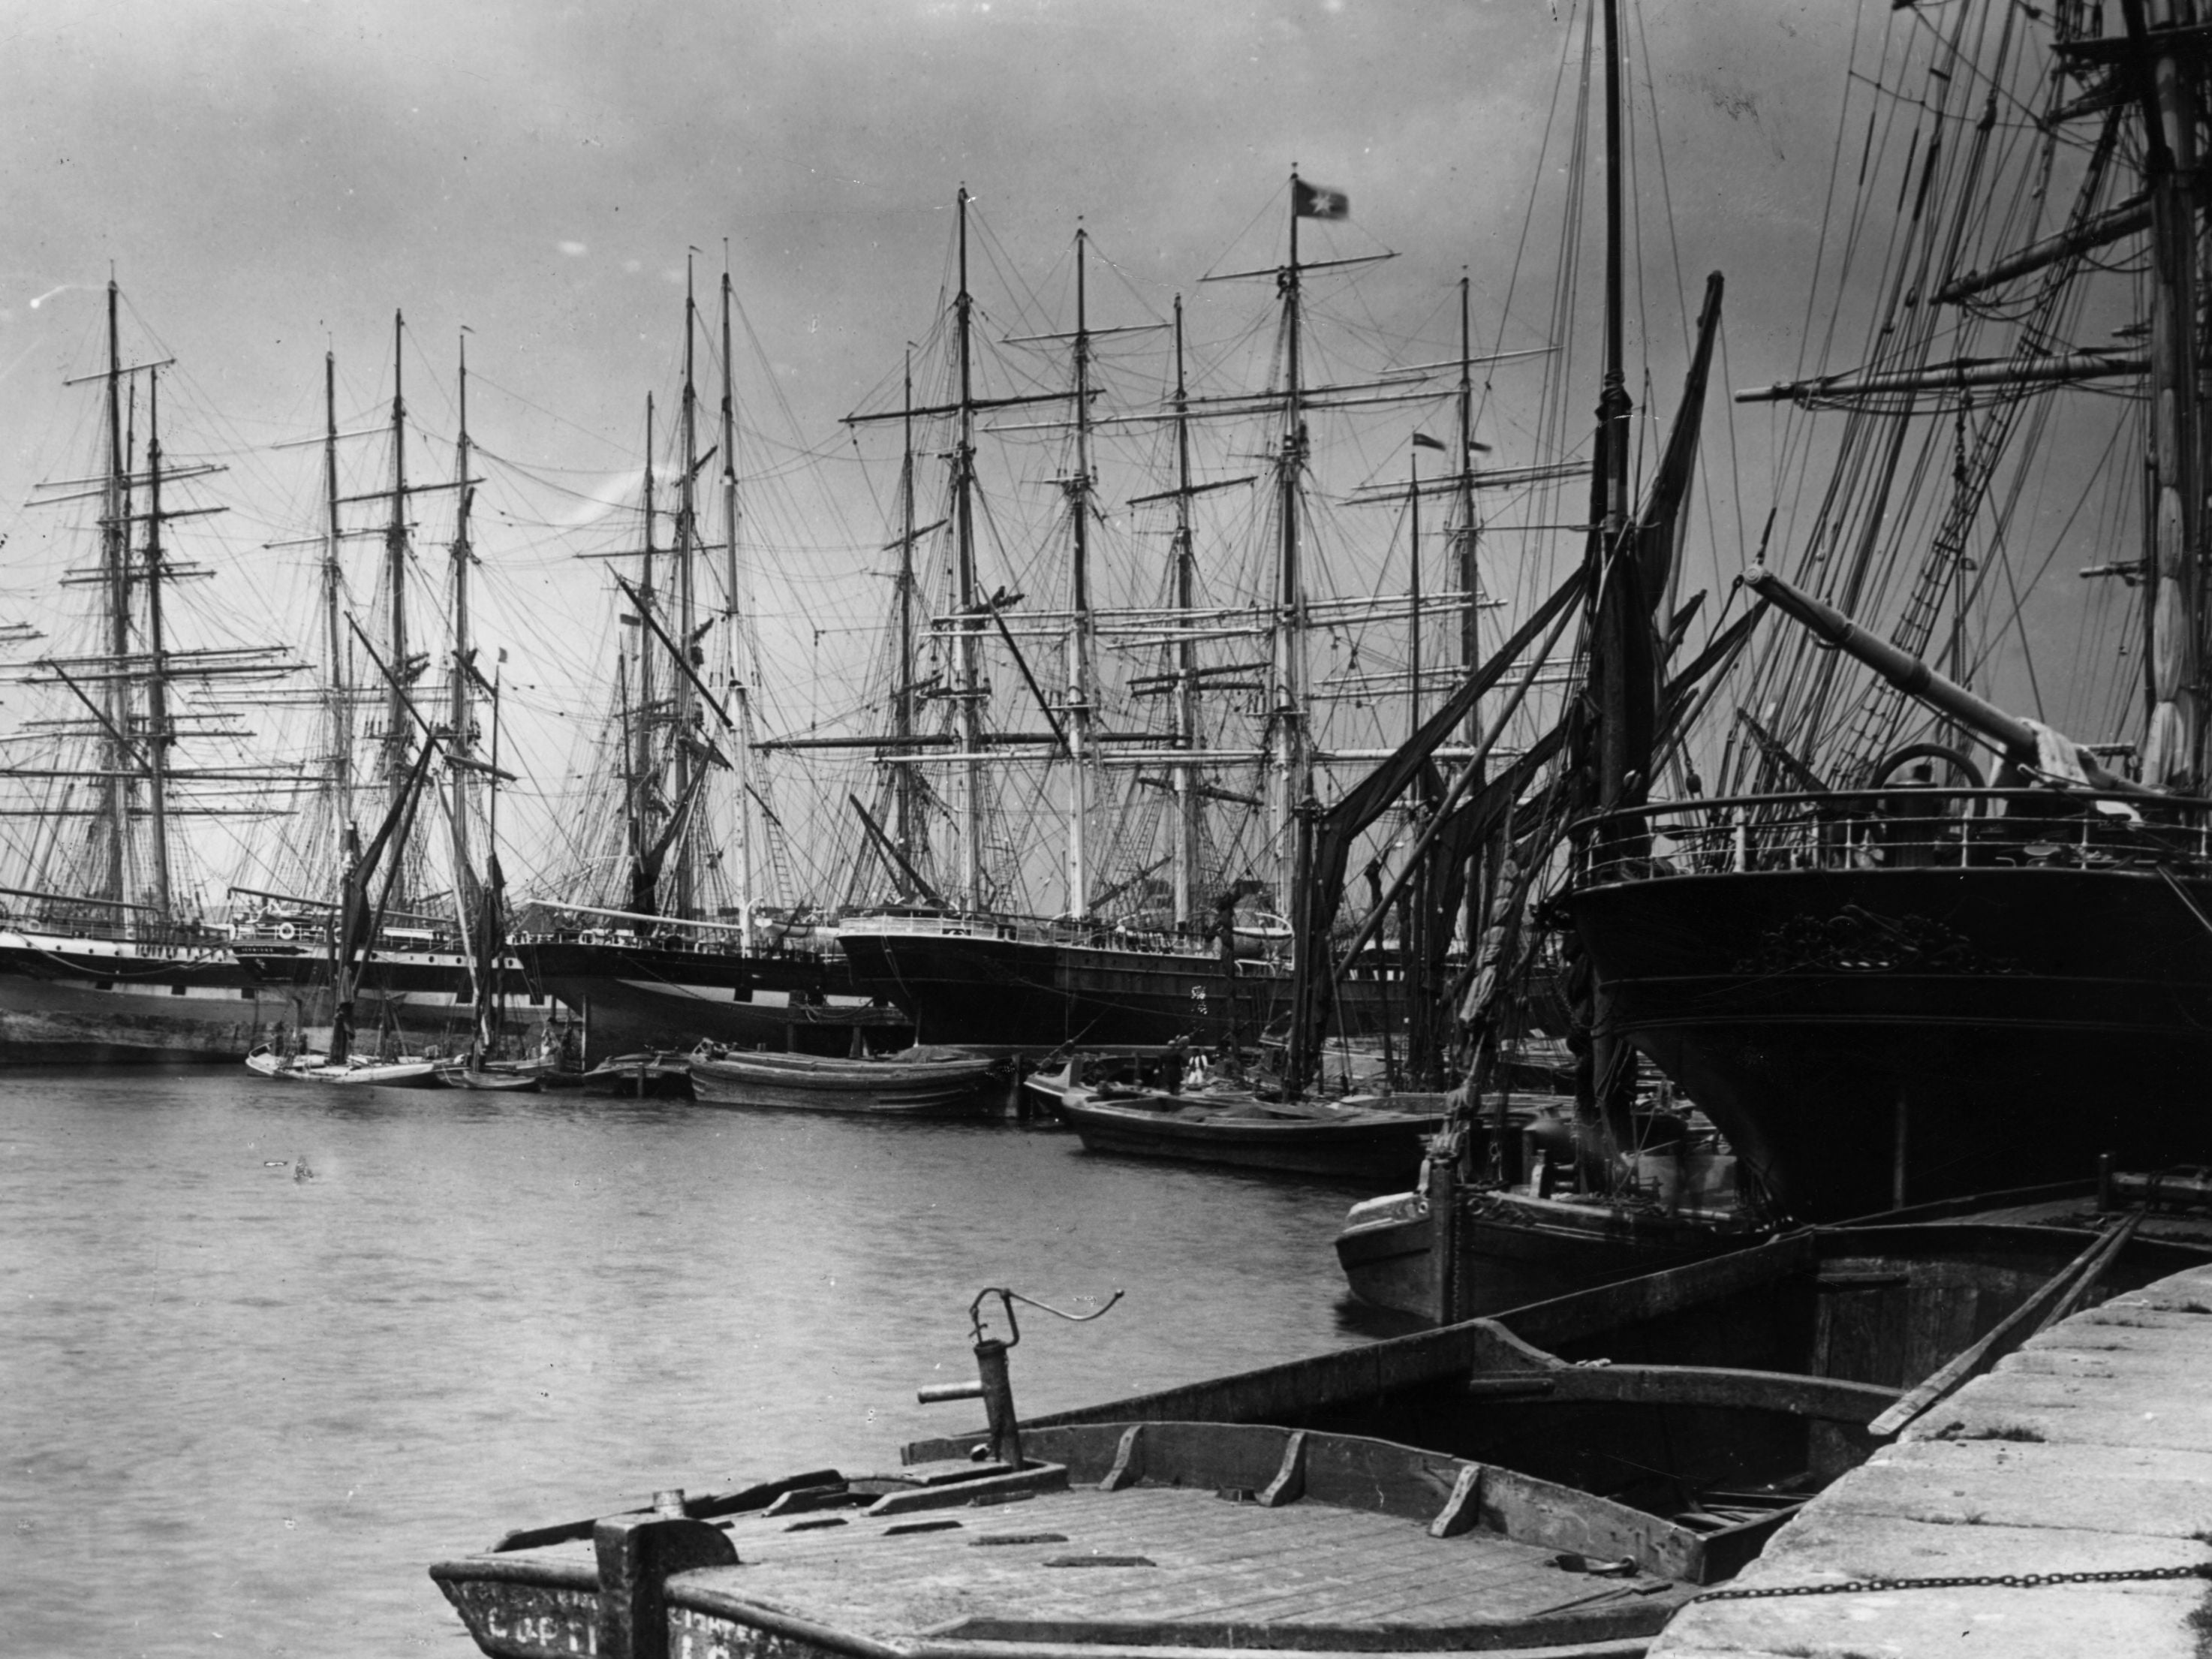 East India Docks, London, 1892